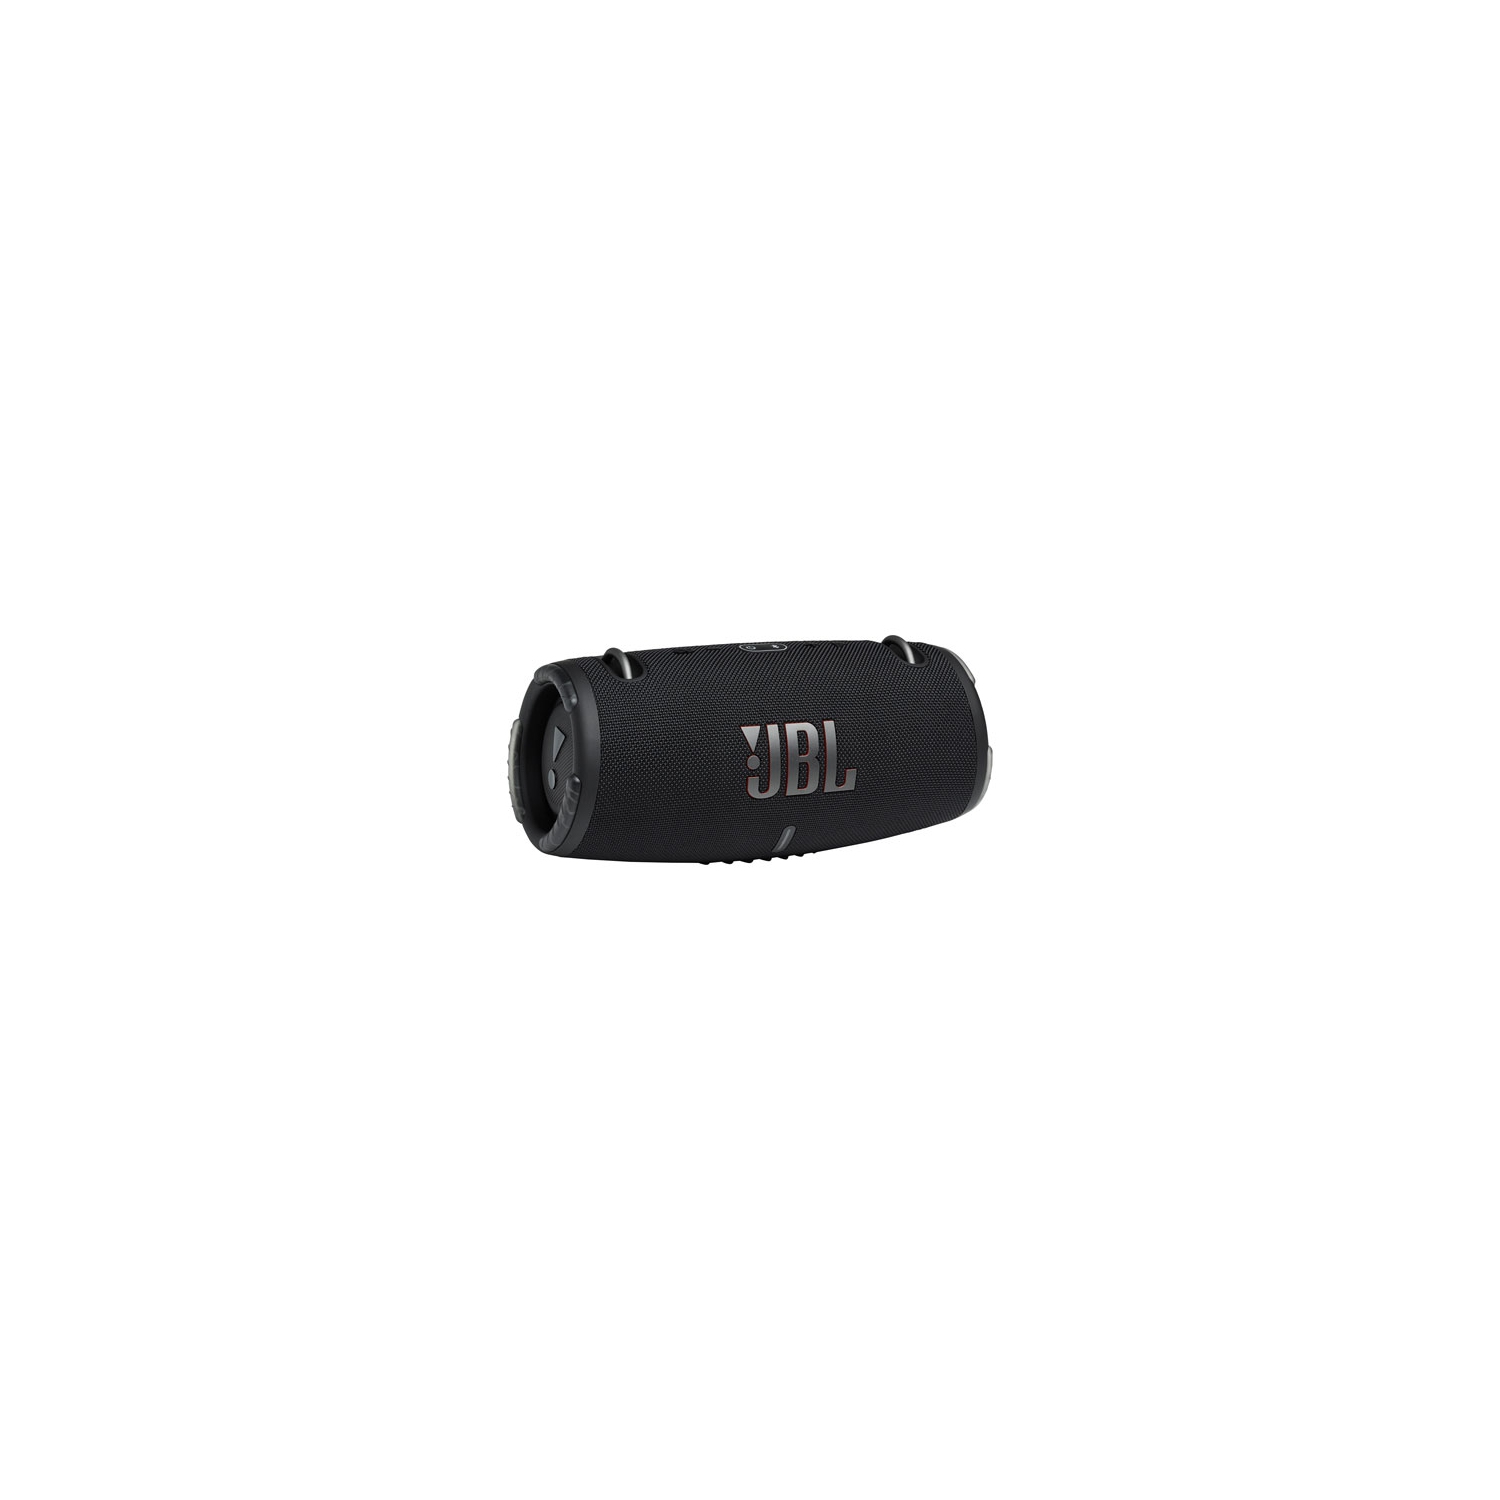 Open Box - JBL Xtreme 3 Rugged/Waterproof Bluetooth Wireless Speaker - Black